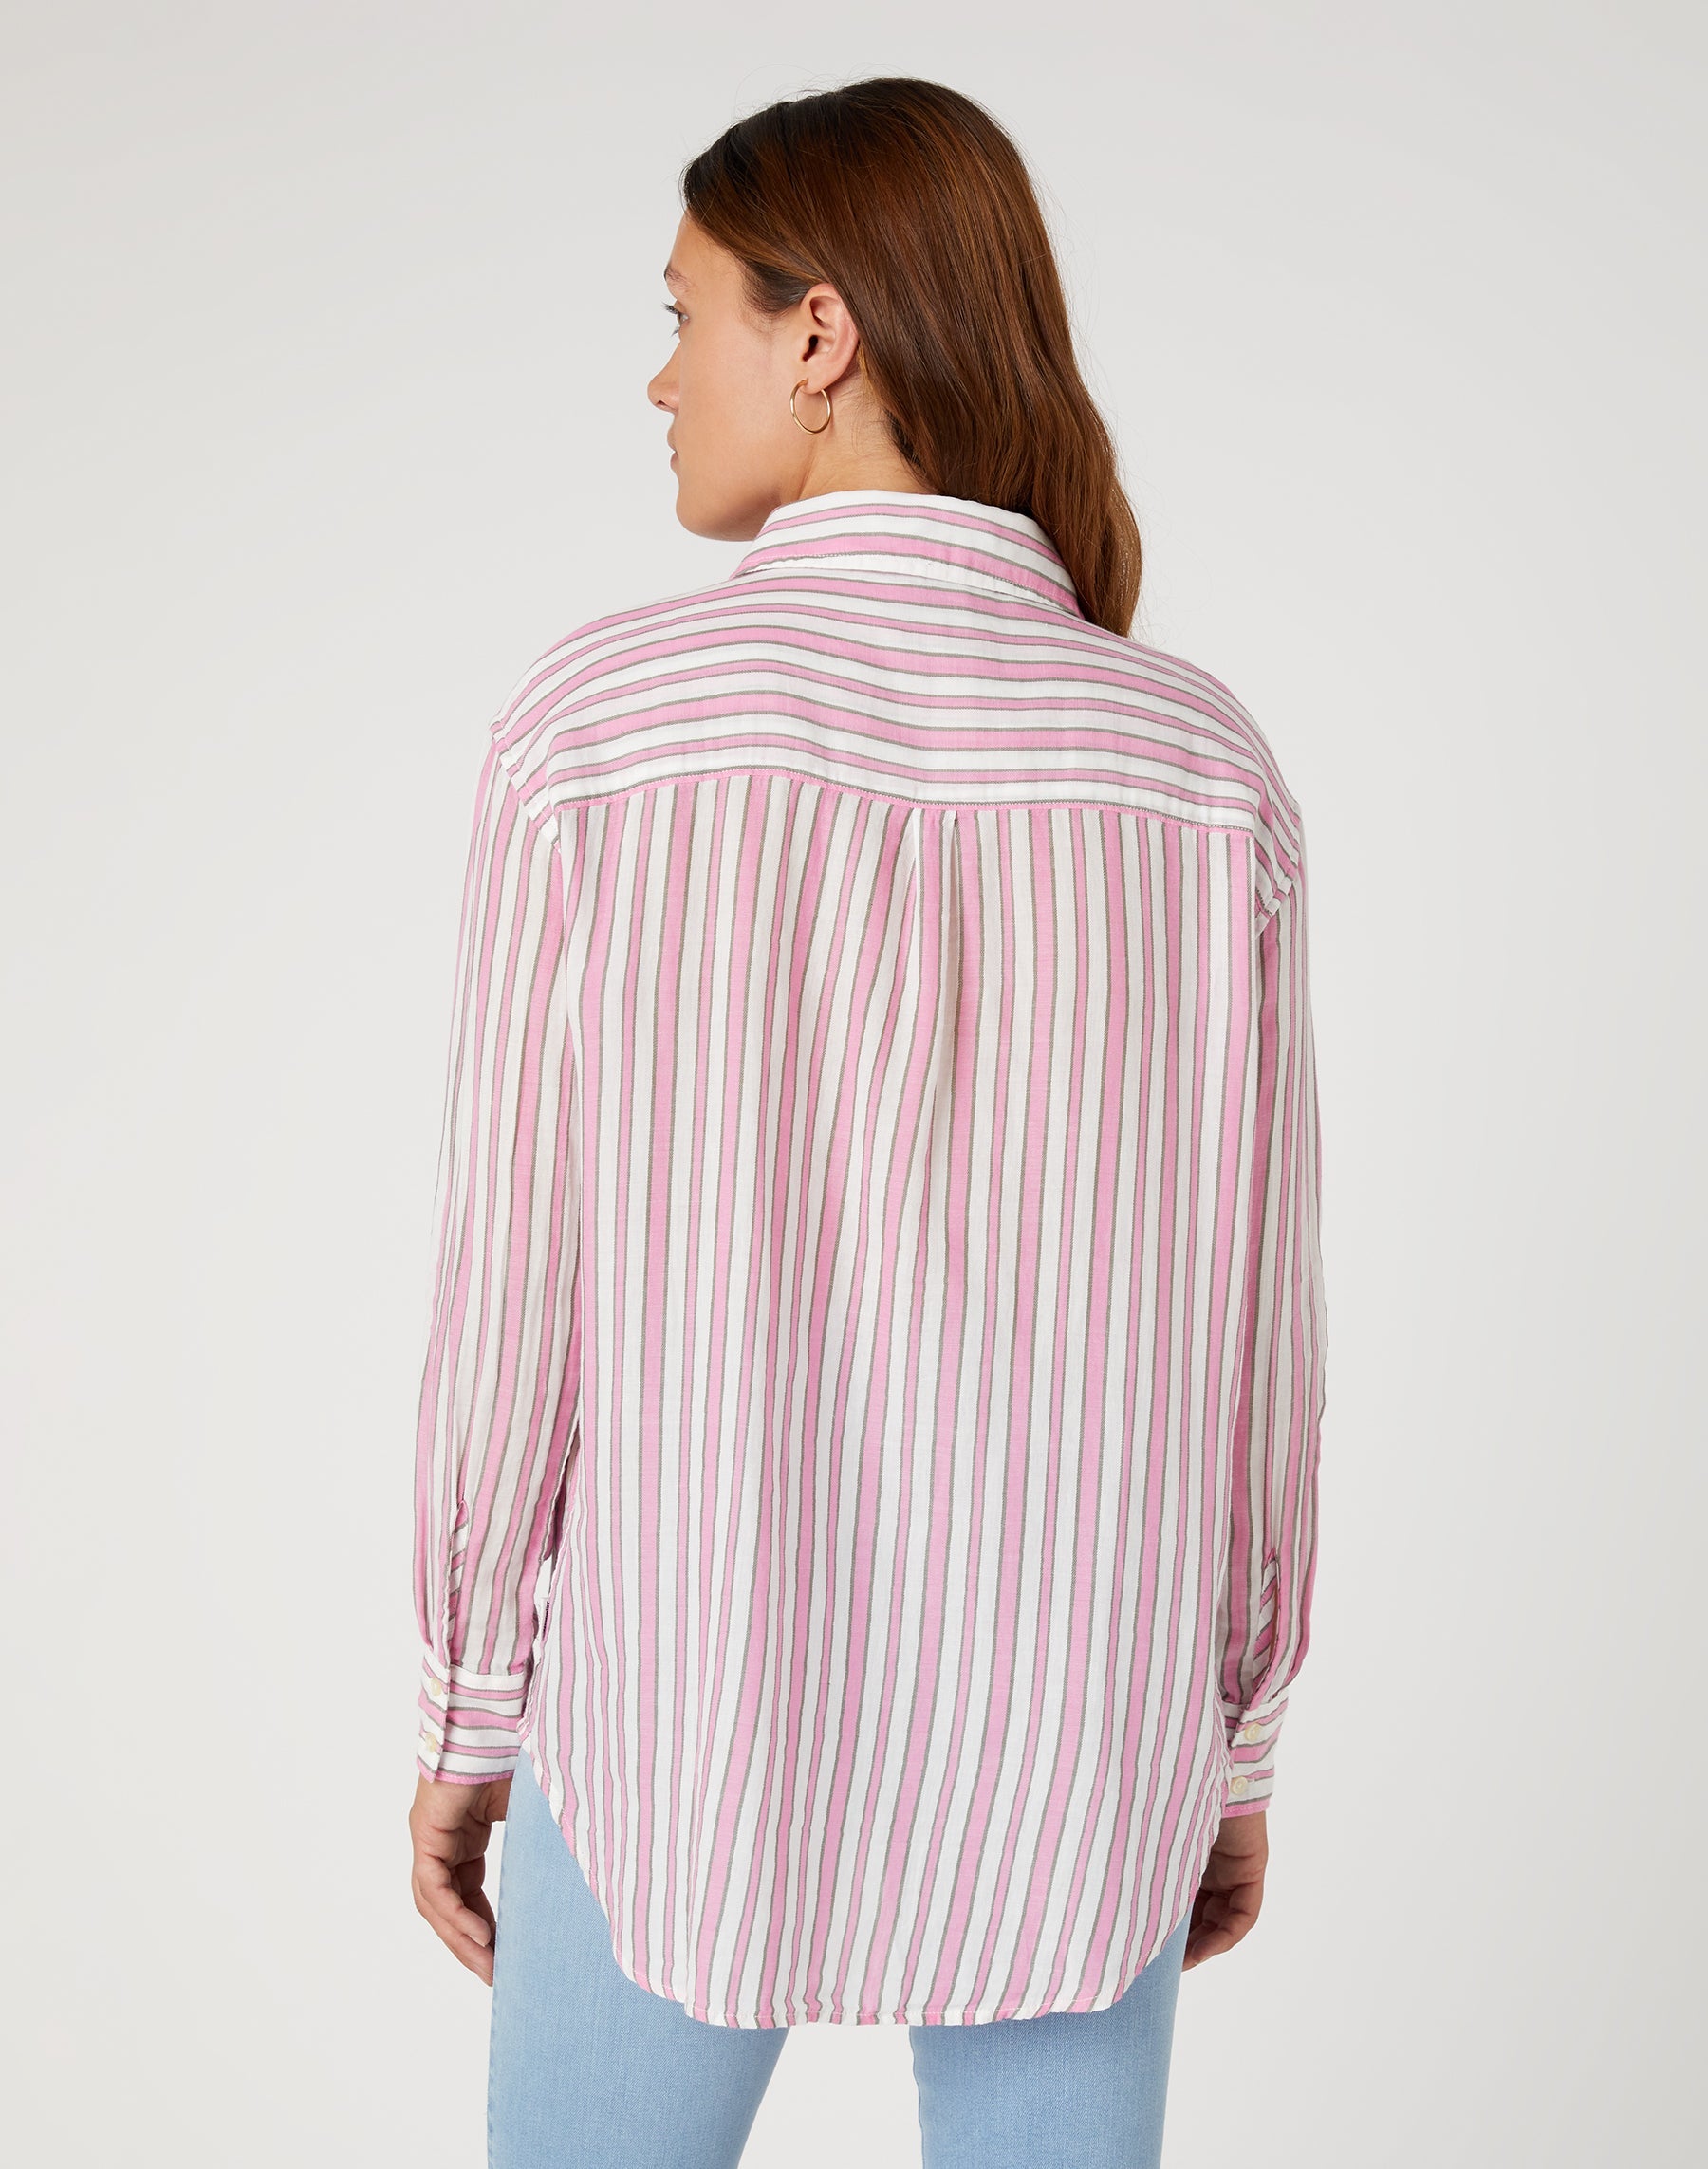 One Pocket Shirt in Fuchsia Rose Hemden Wrangler   